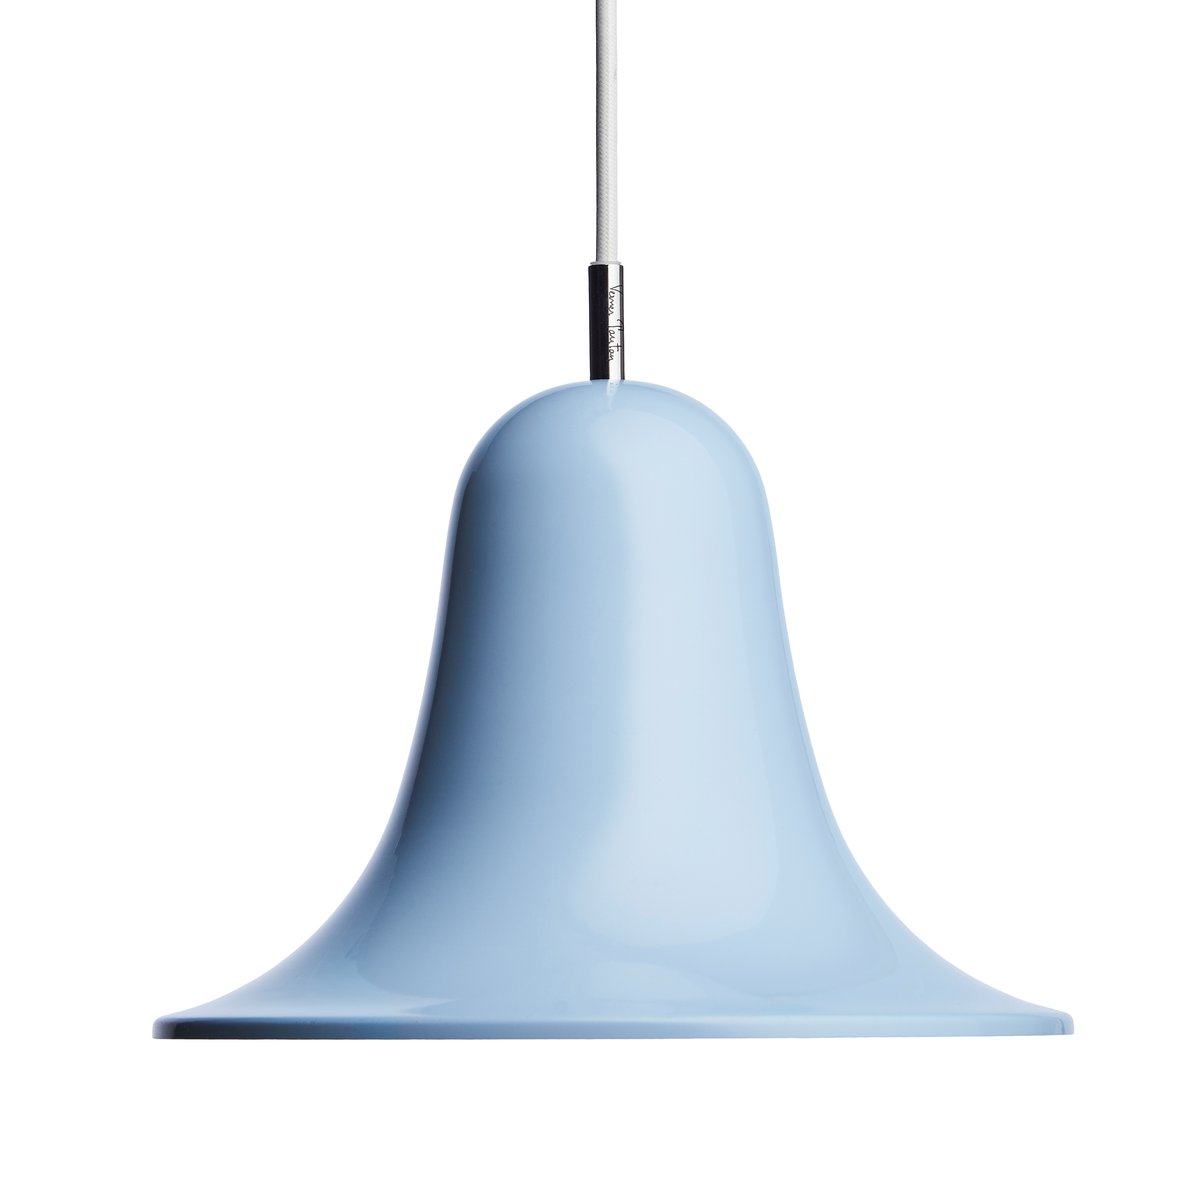 Verpan Pantop hanglamp Ø23 cm Light blue